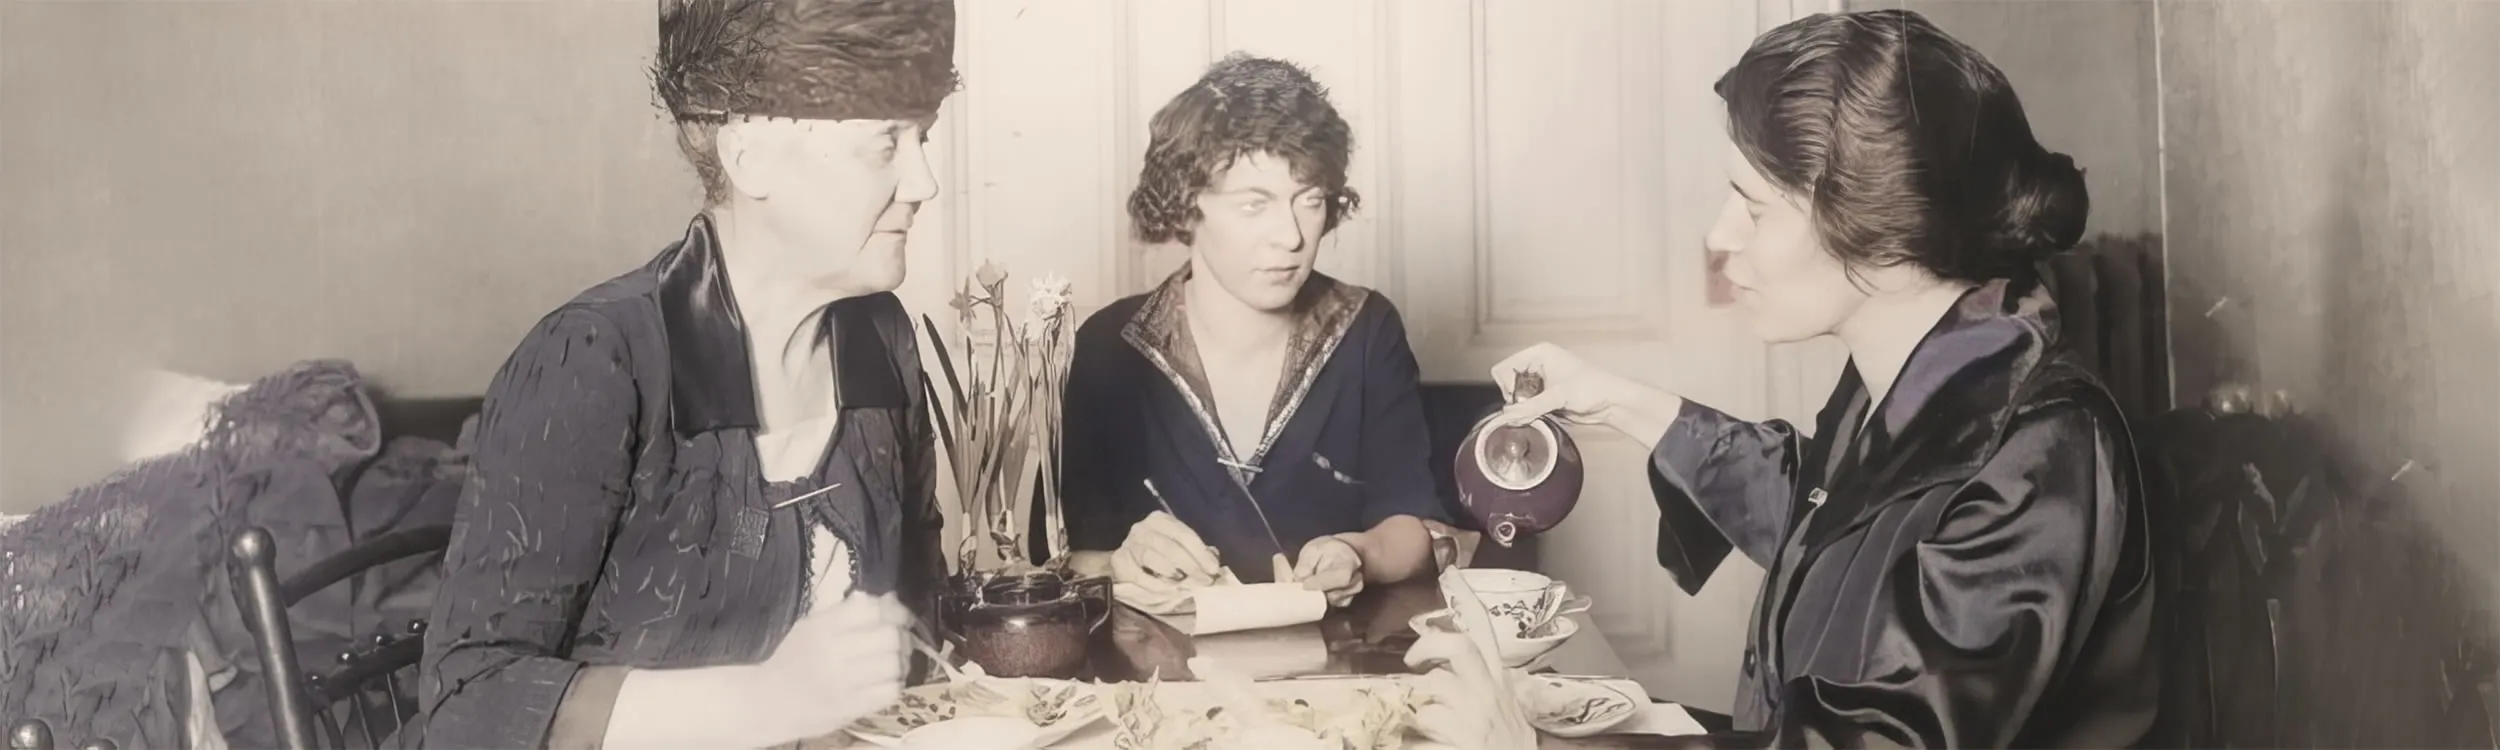 1920s census substitute reveals the Suffragists Tea Room